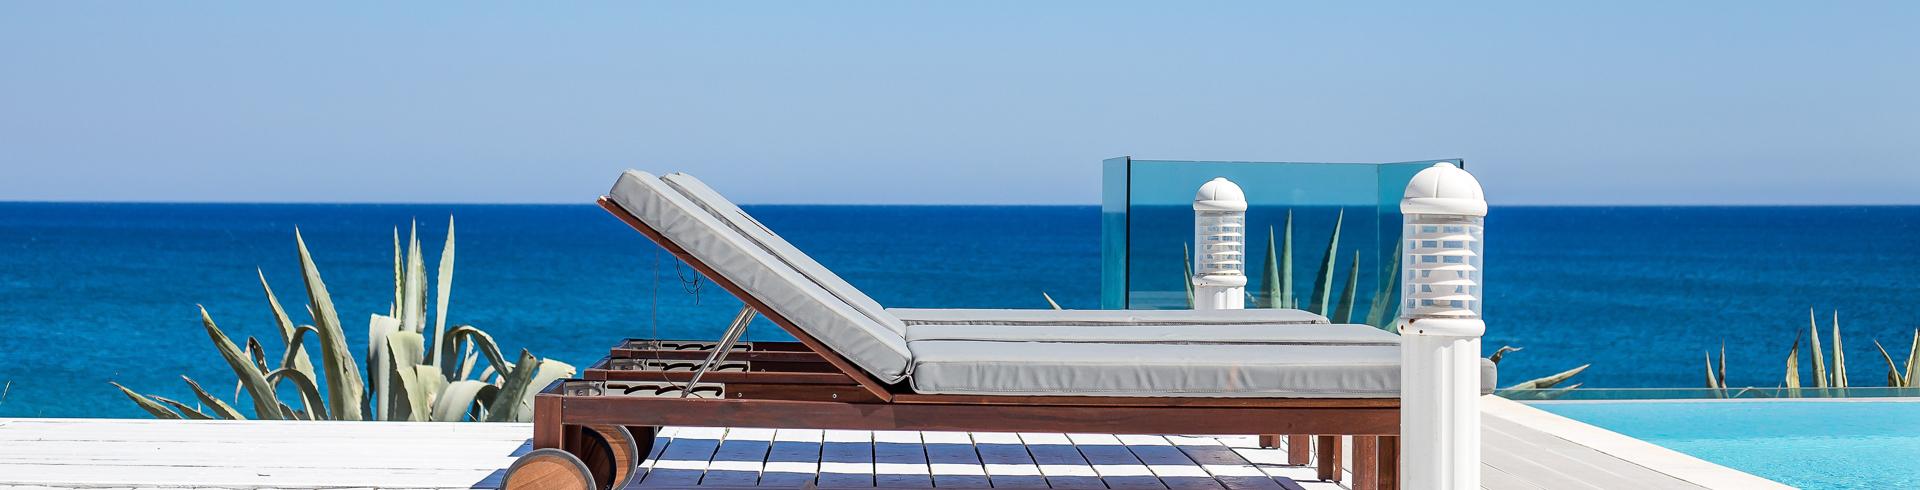 Rhodos Luxusvilla Ferienhaus mit Pool und Meerblick